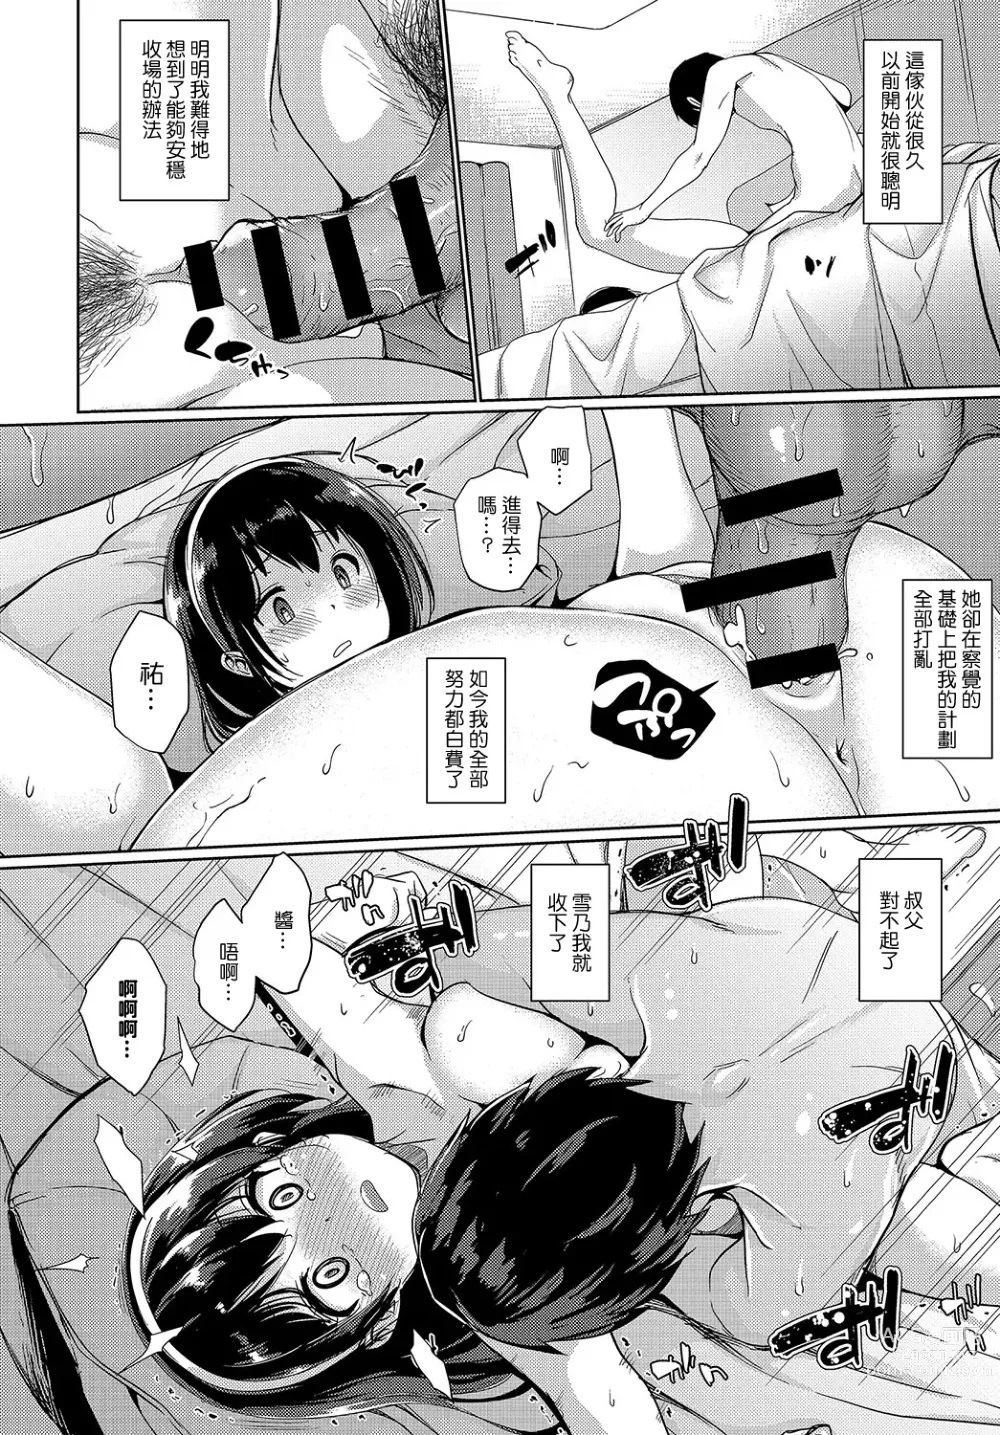 Page 16 of manga Kamo no Ajitsuke